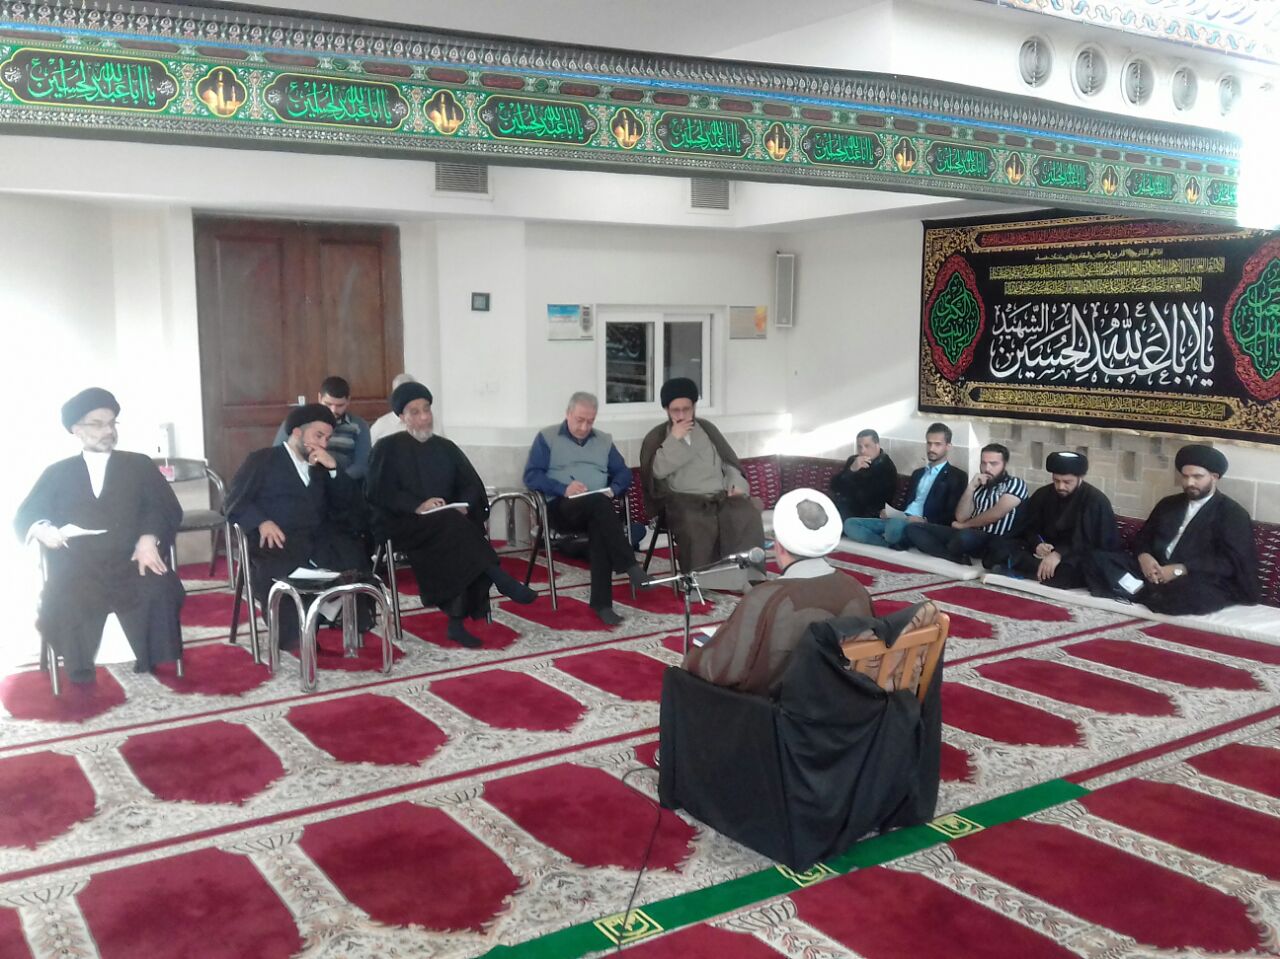 حضور جمعی از علمای کشور عراق در مسجد امام خمینی مشهد